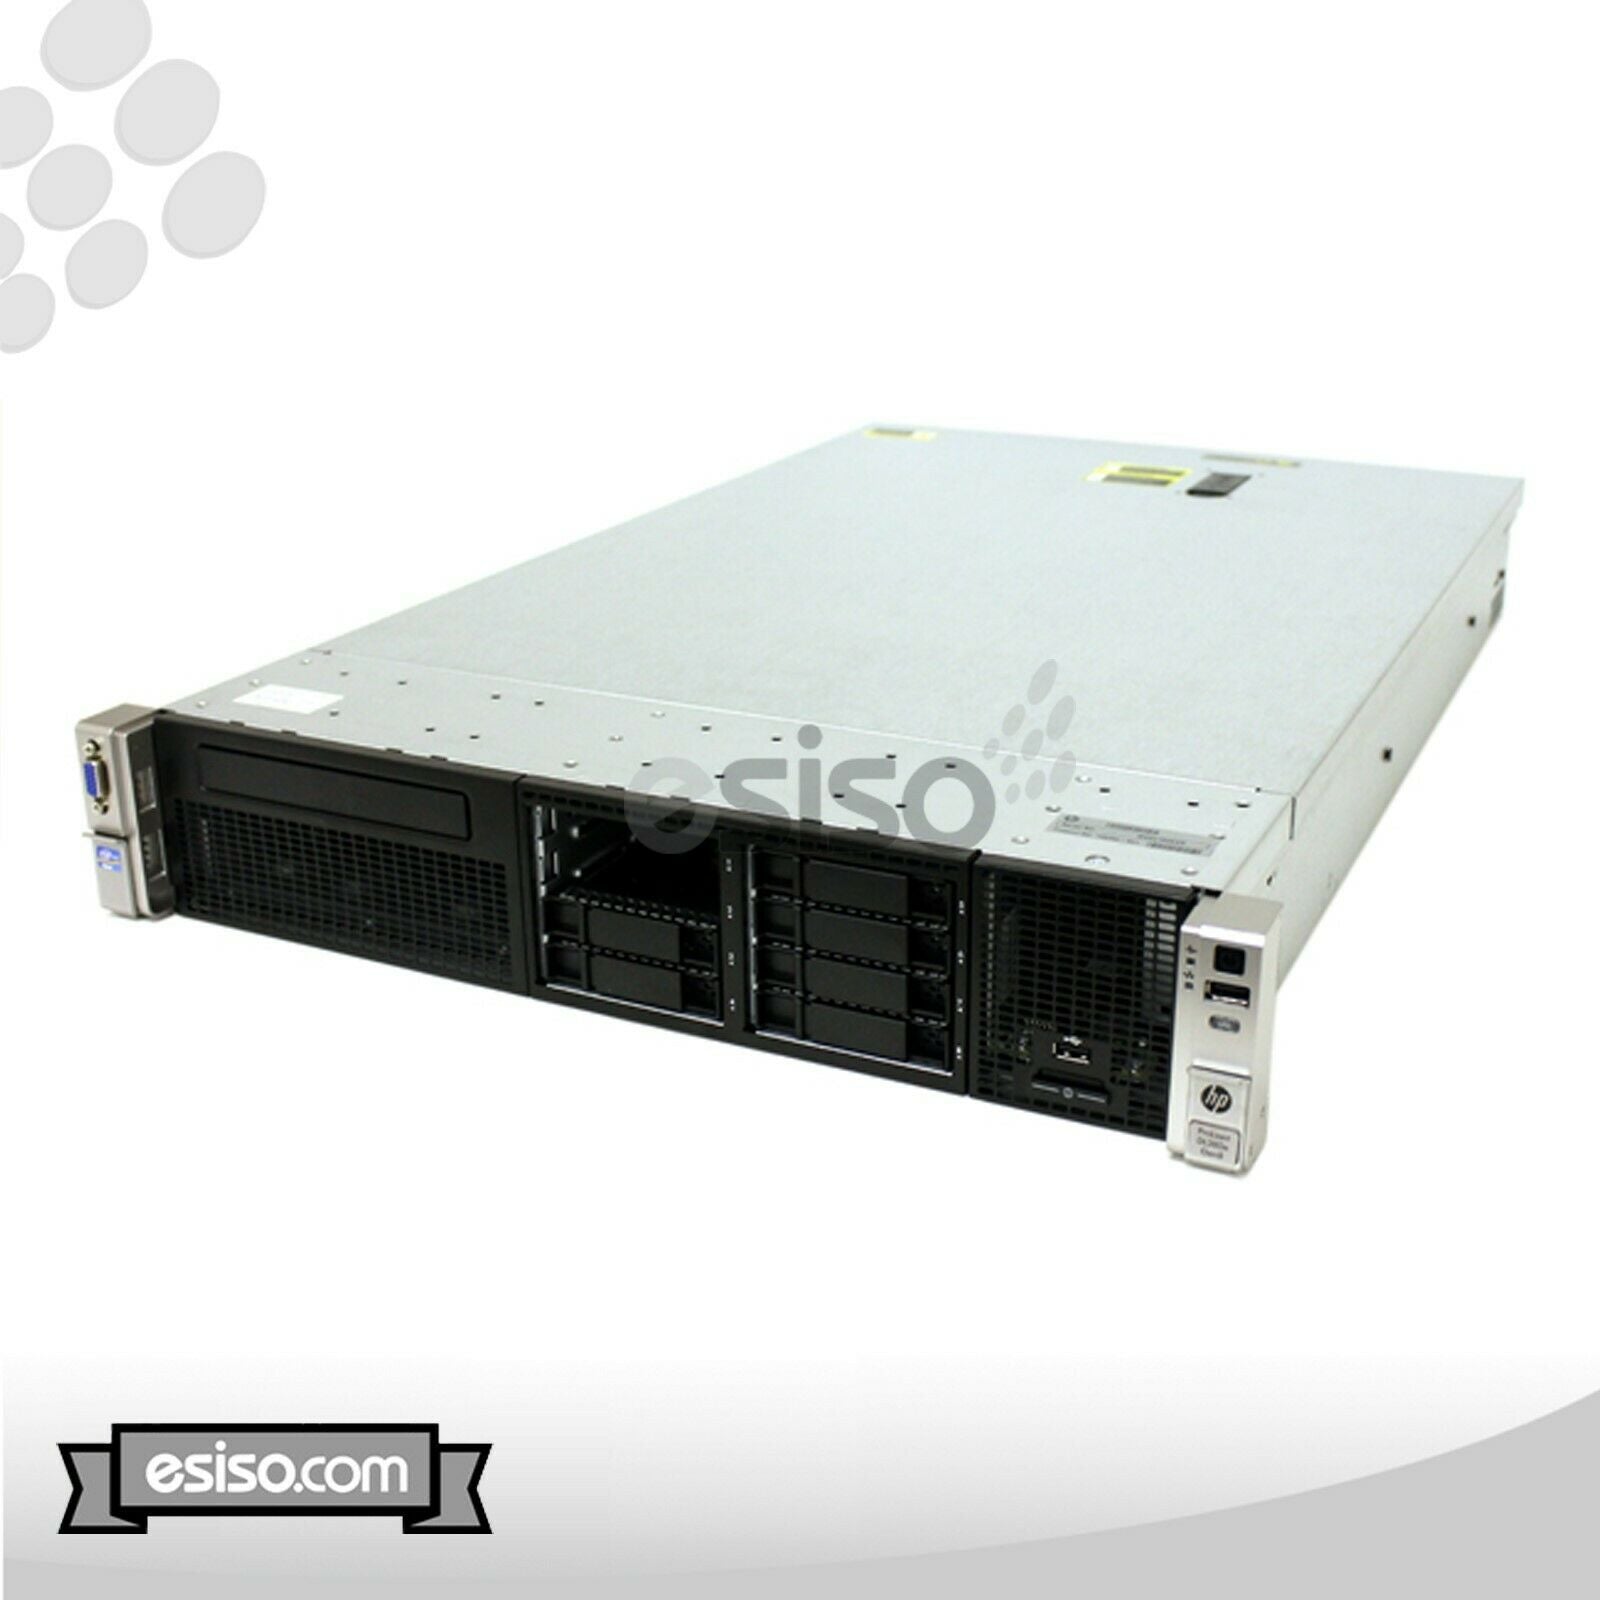 HP ProLiant DL380e G8 Gen8 8SFF 2x 6 CORE E5-2420 1.9GHz 32G RAM H220 RAIL NO HD